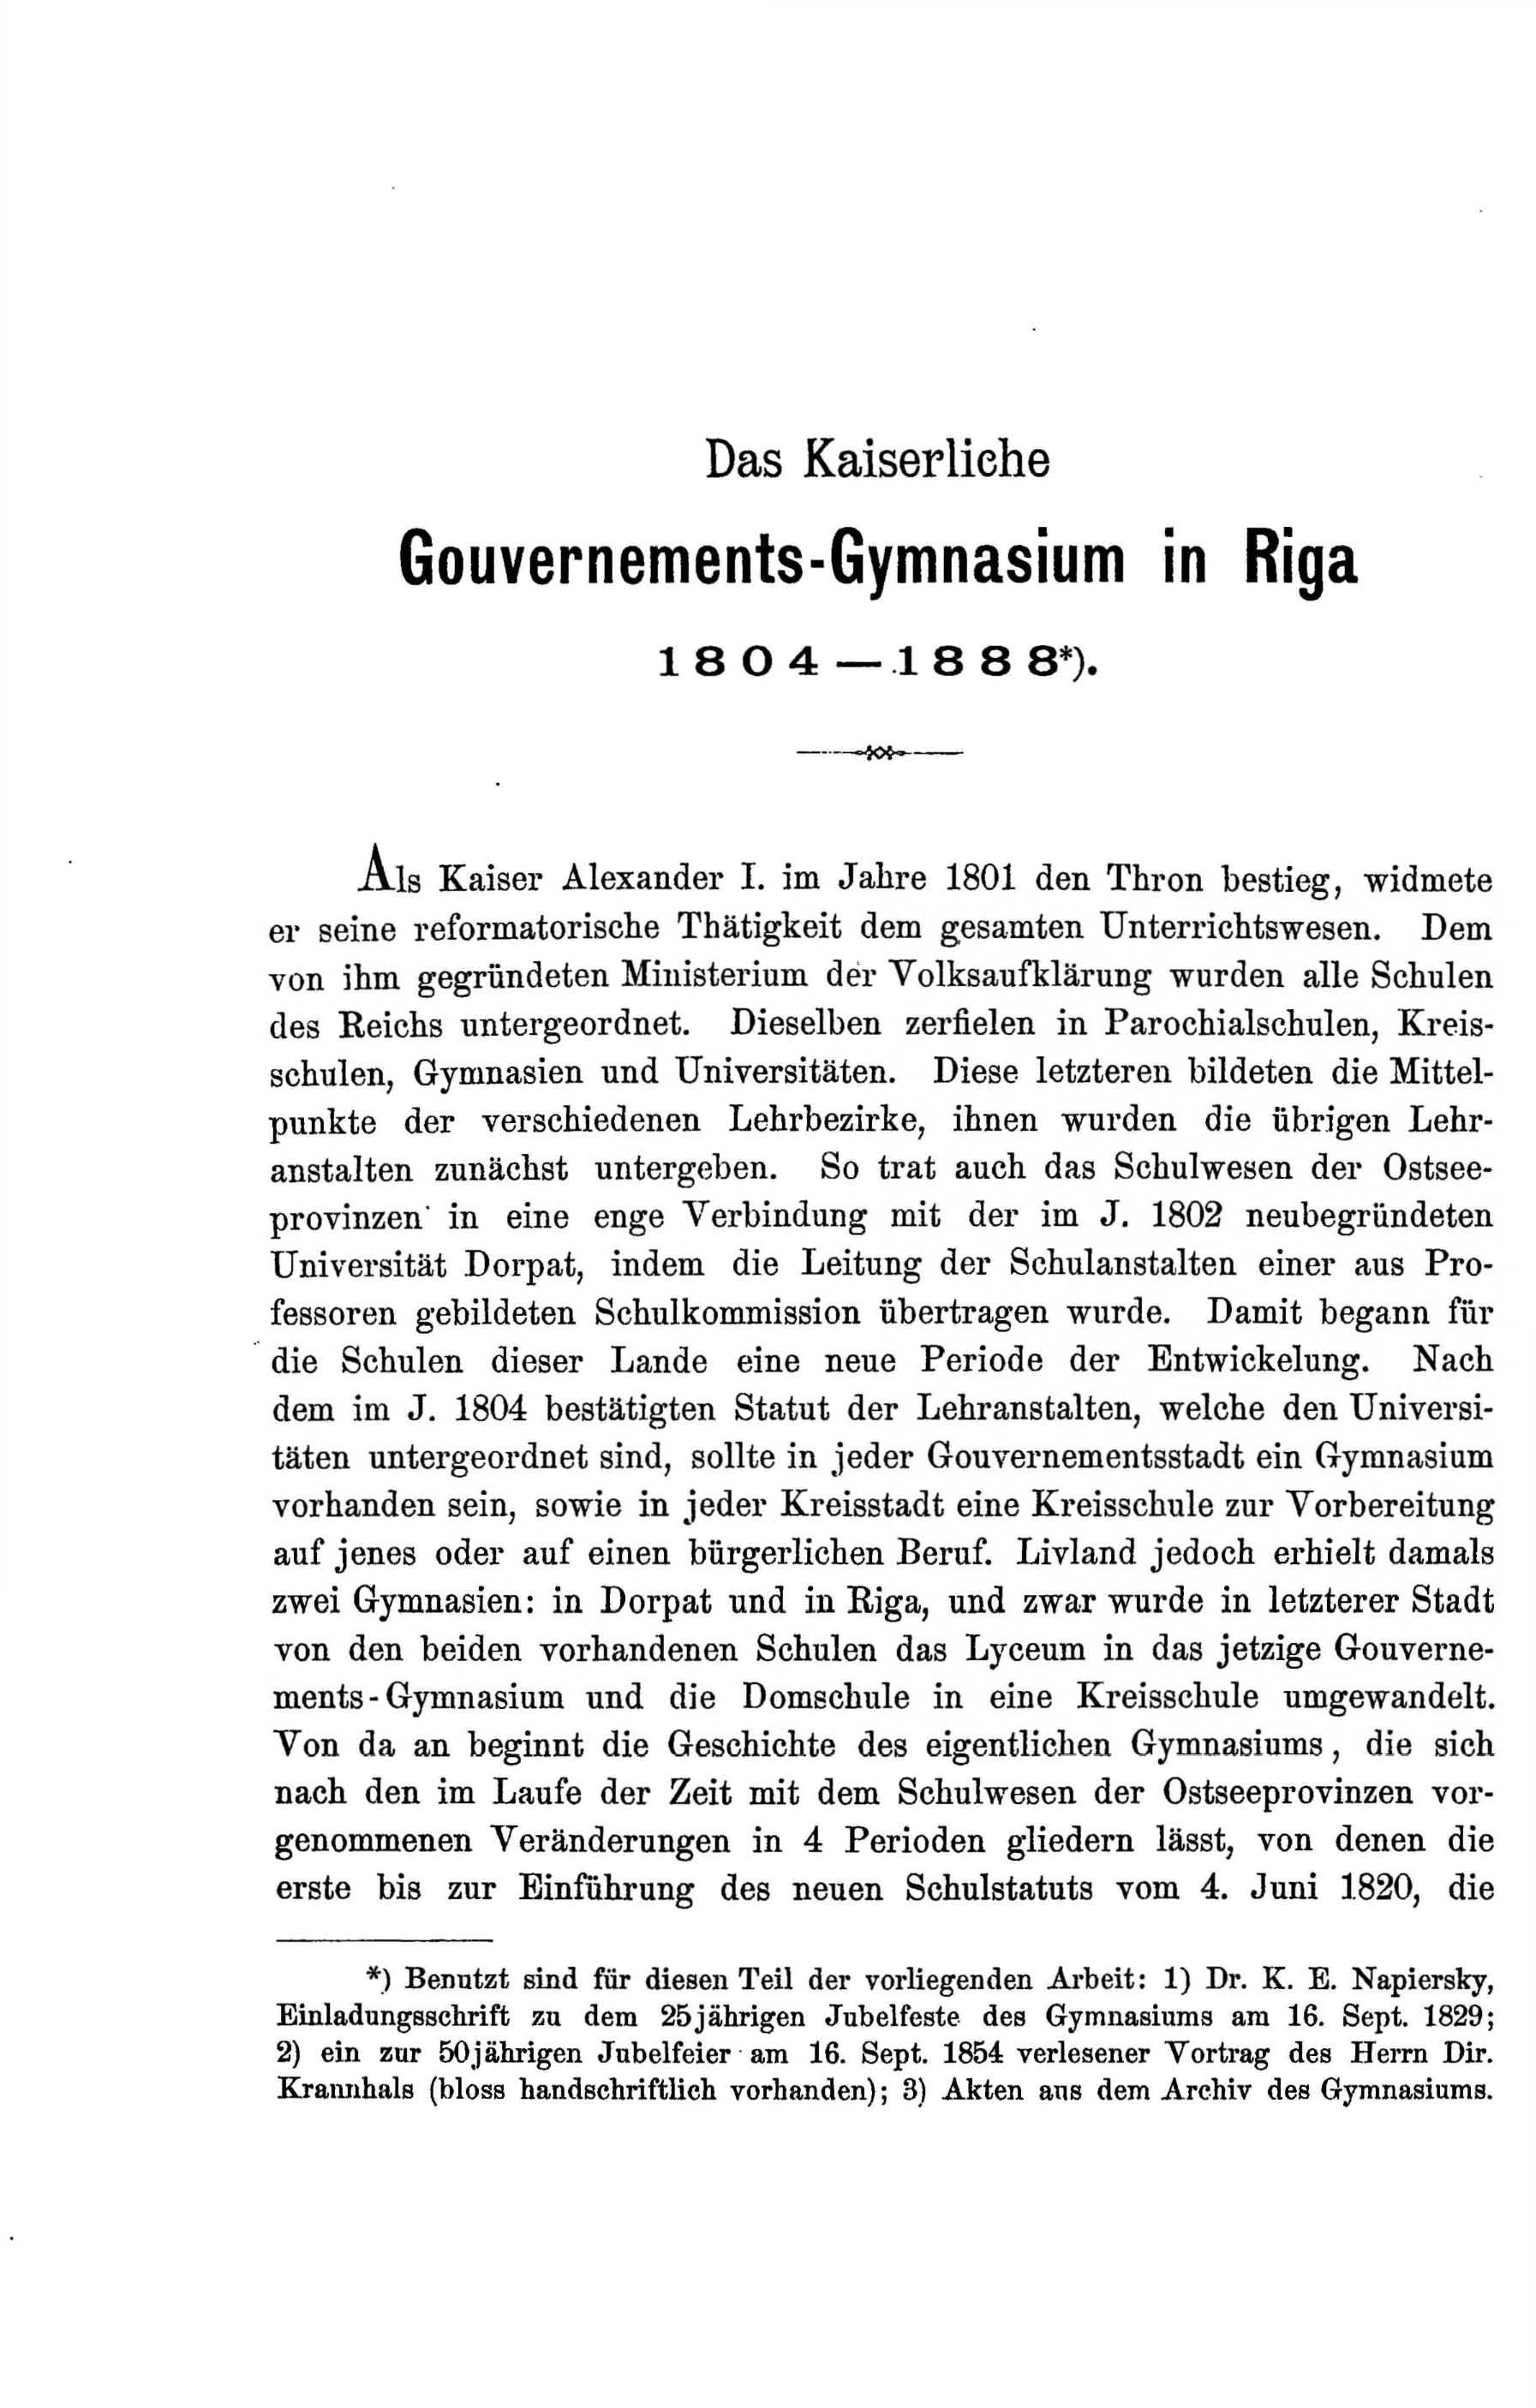 Zur Geschichte des Gouvernements-Gymnasiums in Riga (1888) | 26. Main body of text